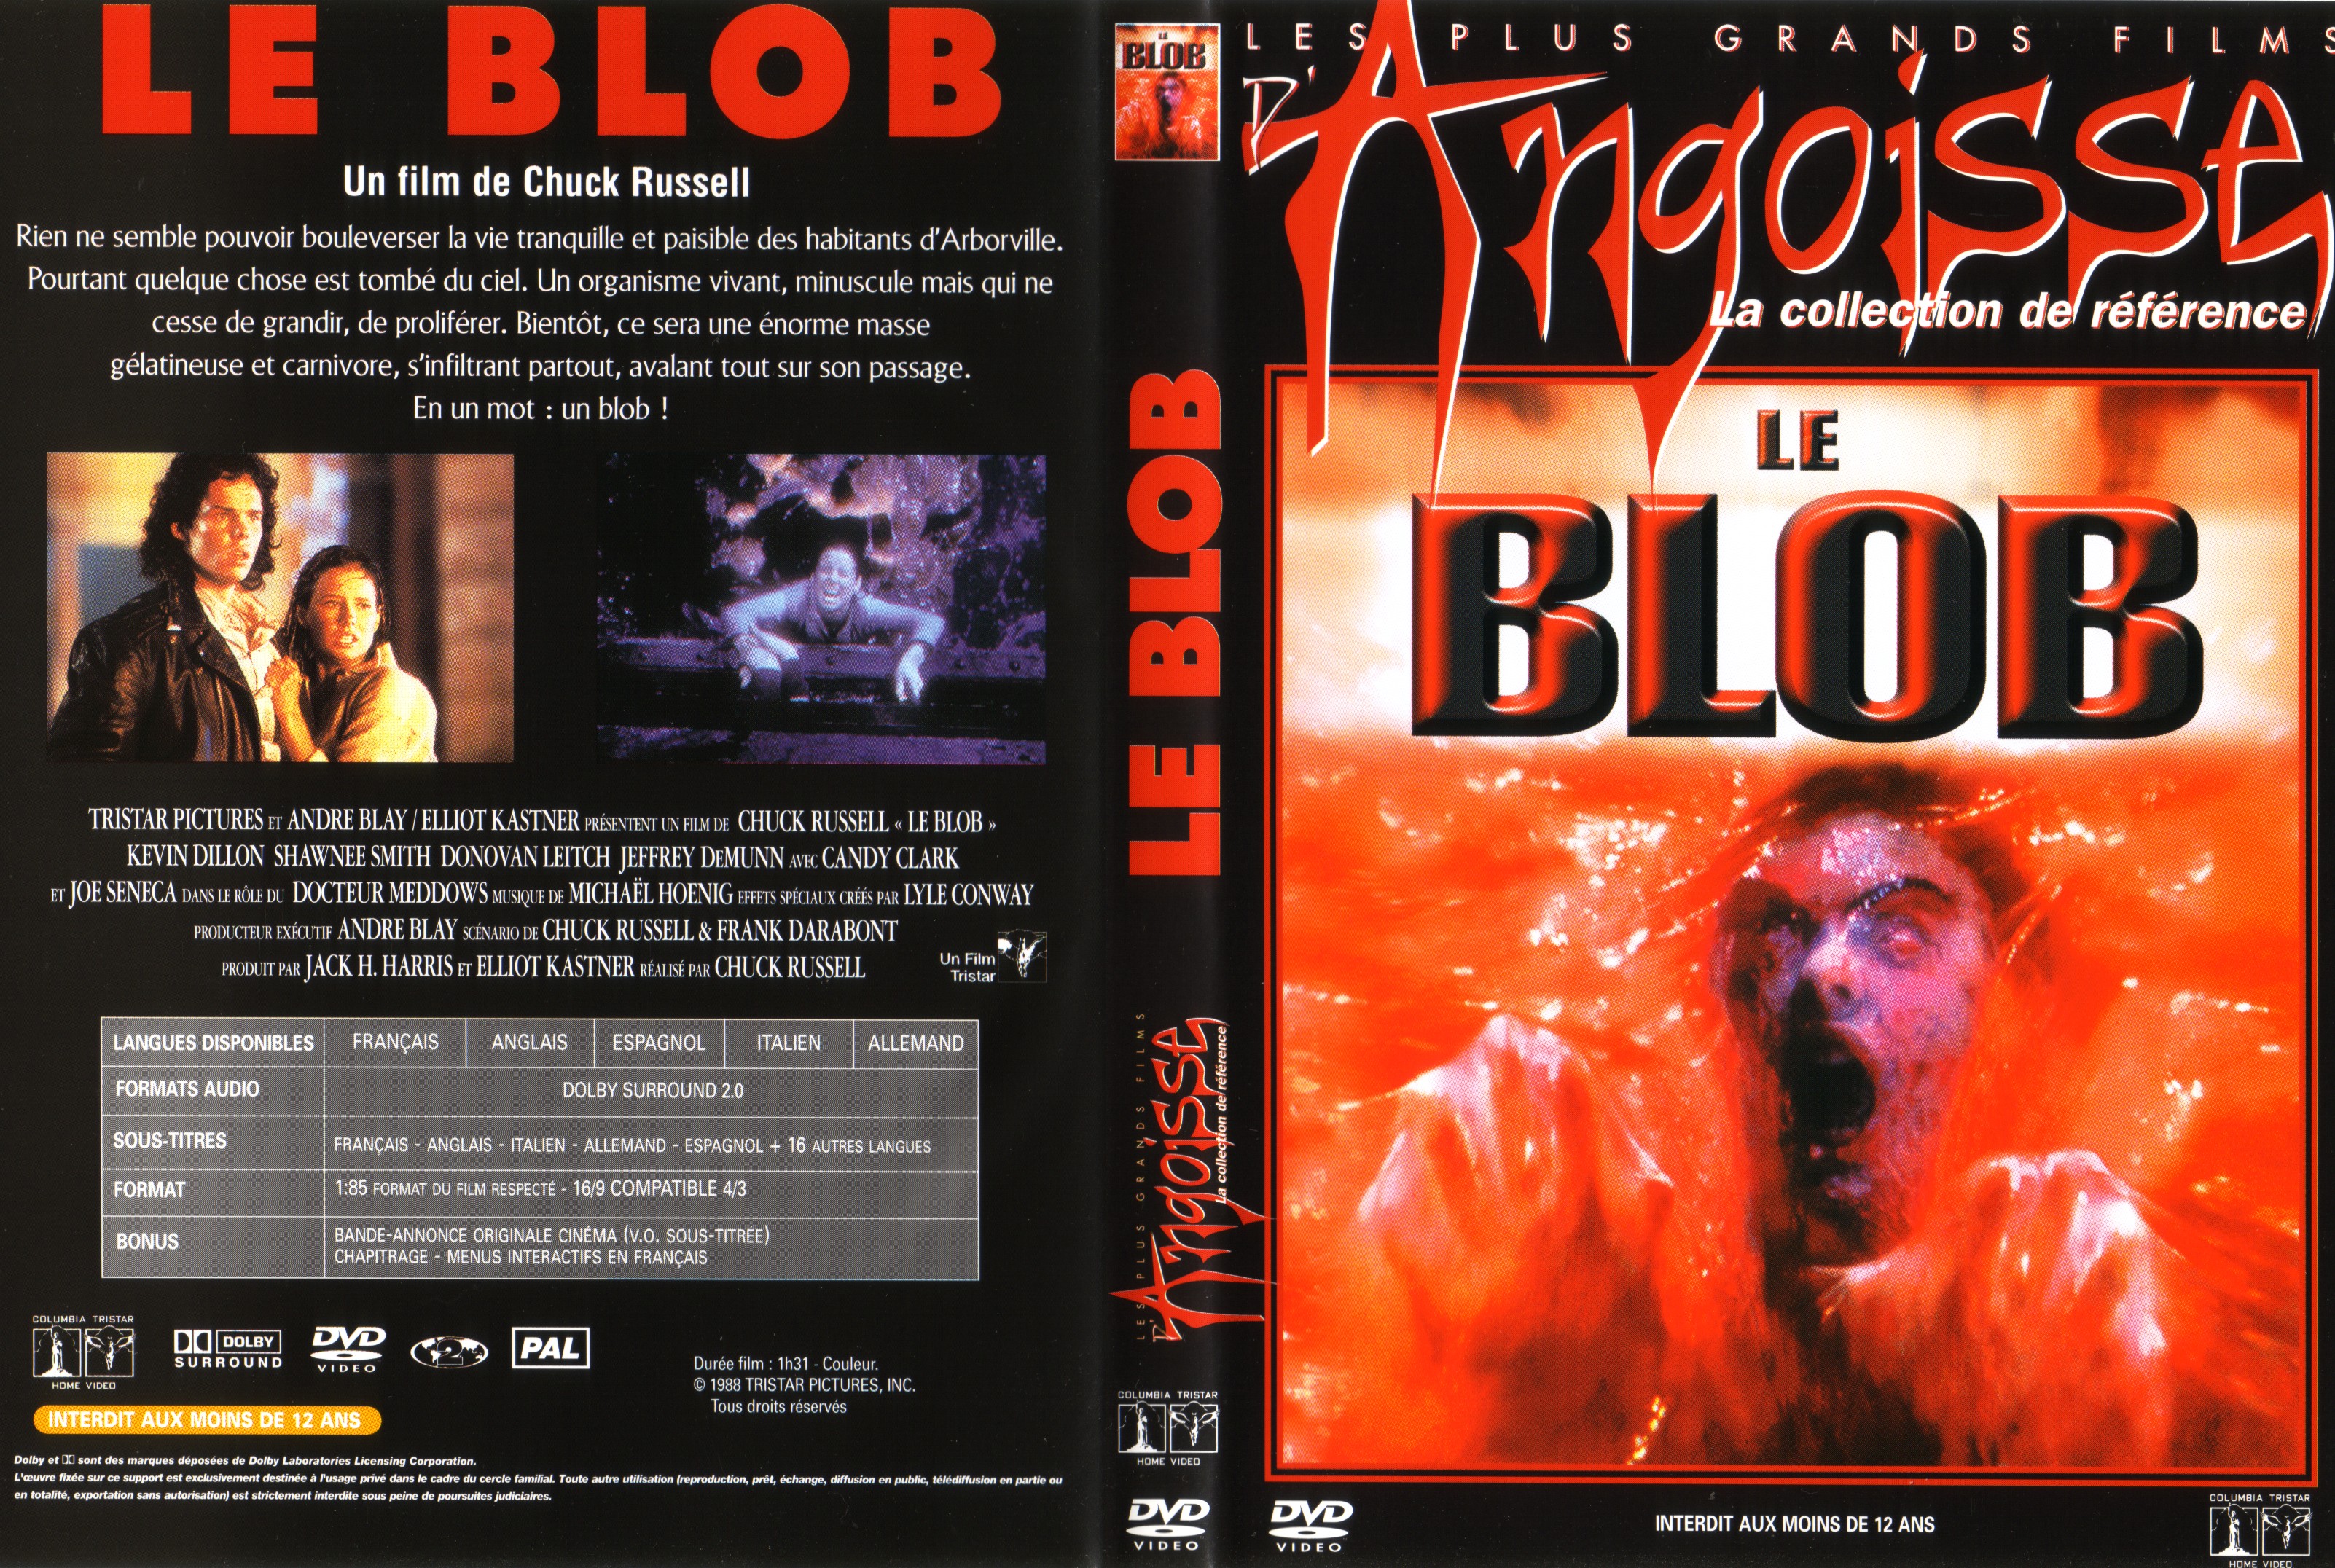 Jaquette DVD Le blob v2